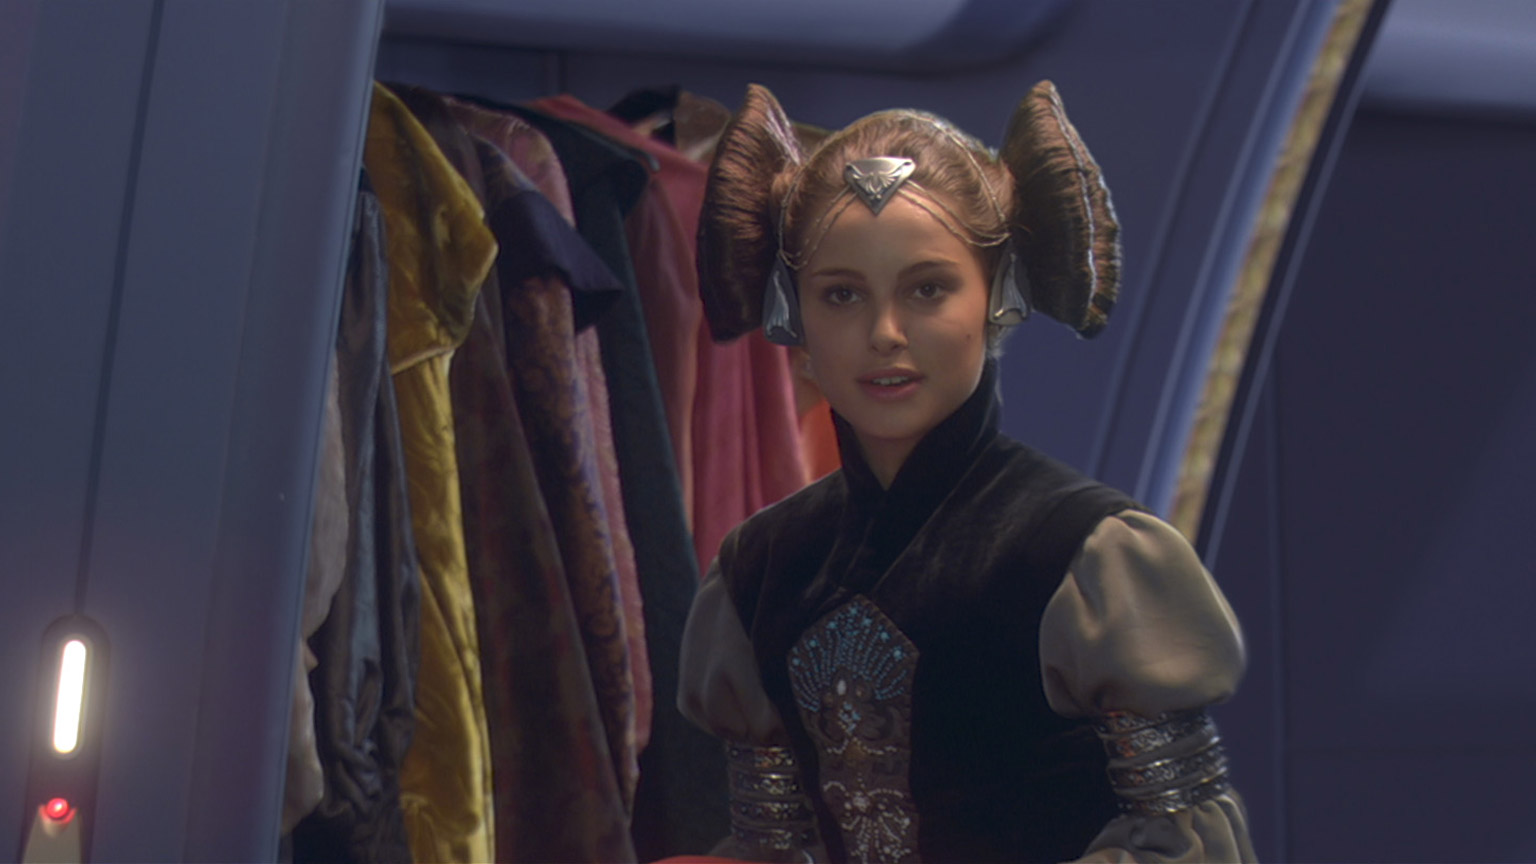 Senator Bail Organa  Star wars outfits, Star wars fashion, Star